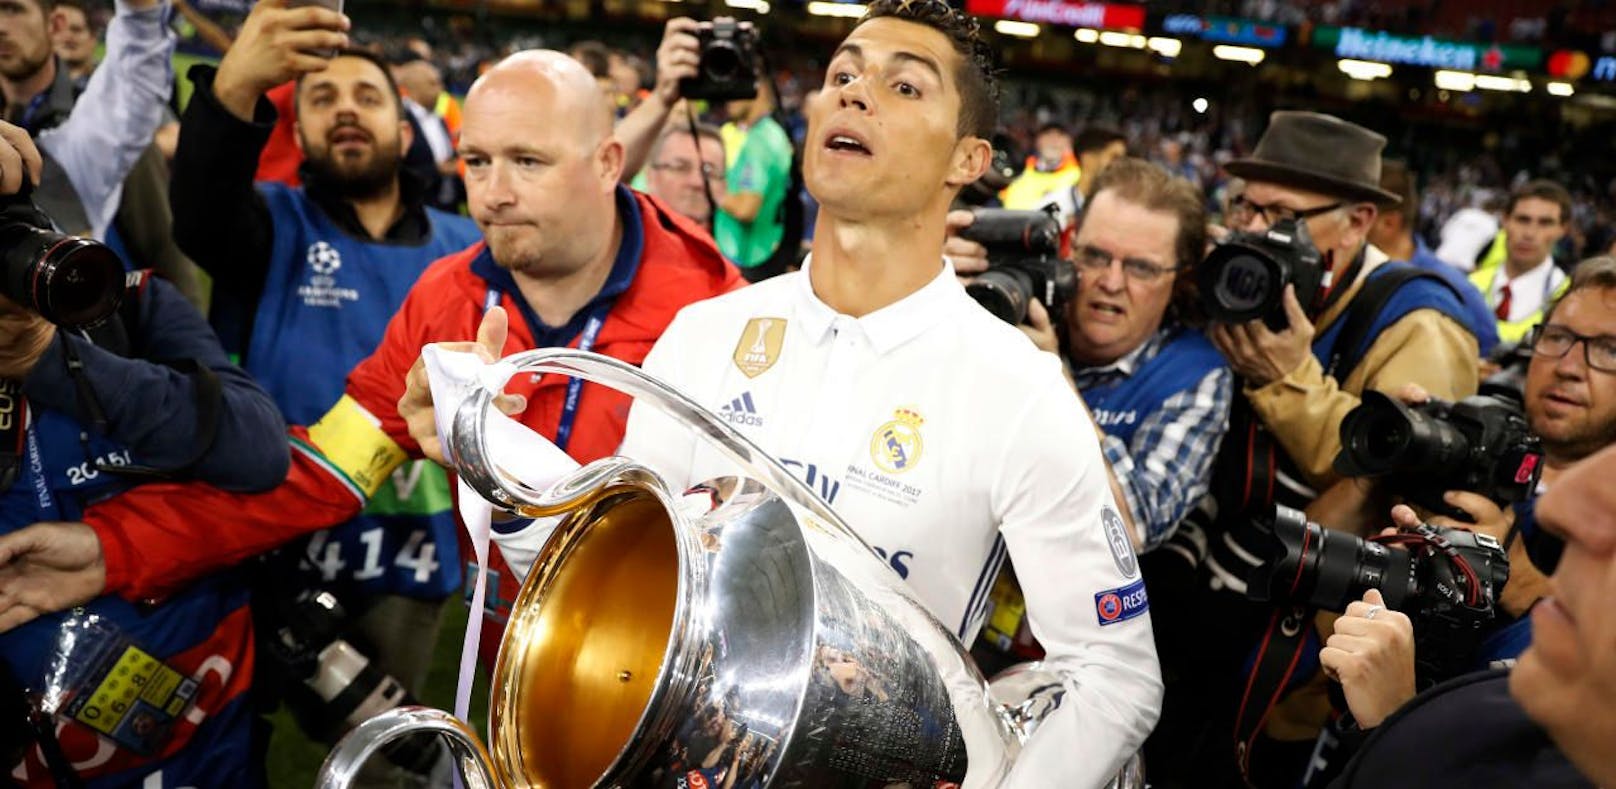 Ronaldo verspricht Fans: "Starten in eine neue Ära"